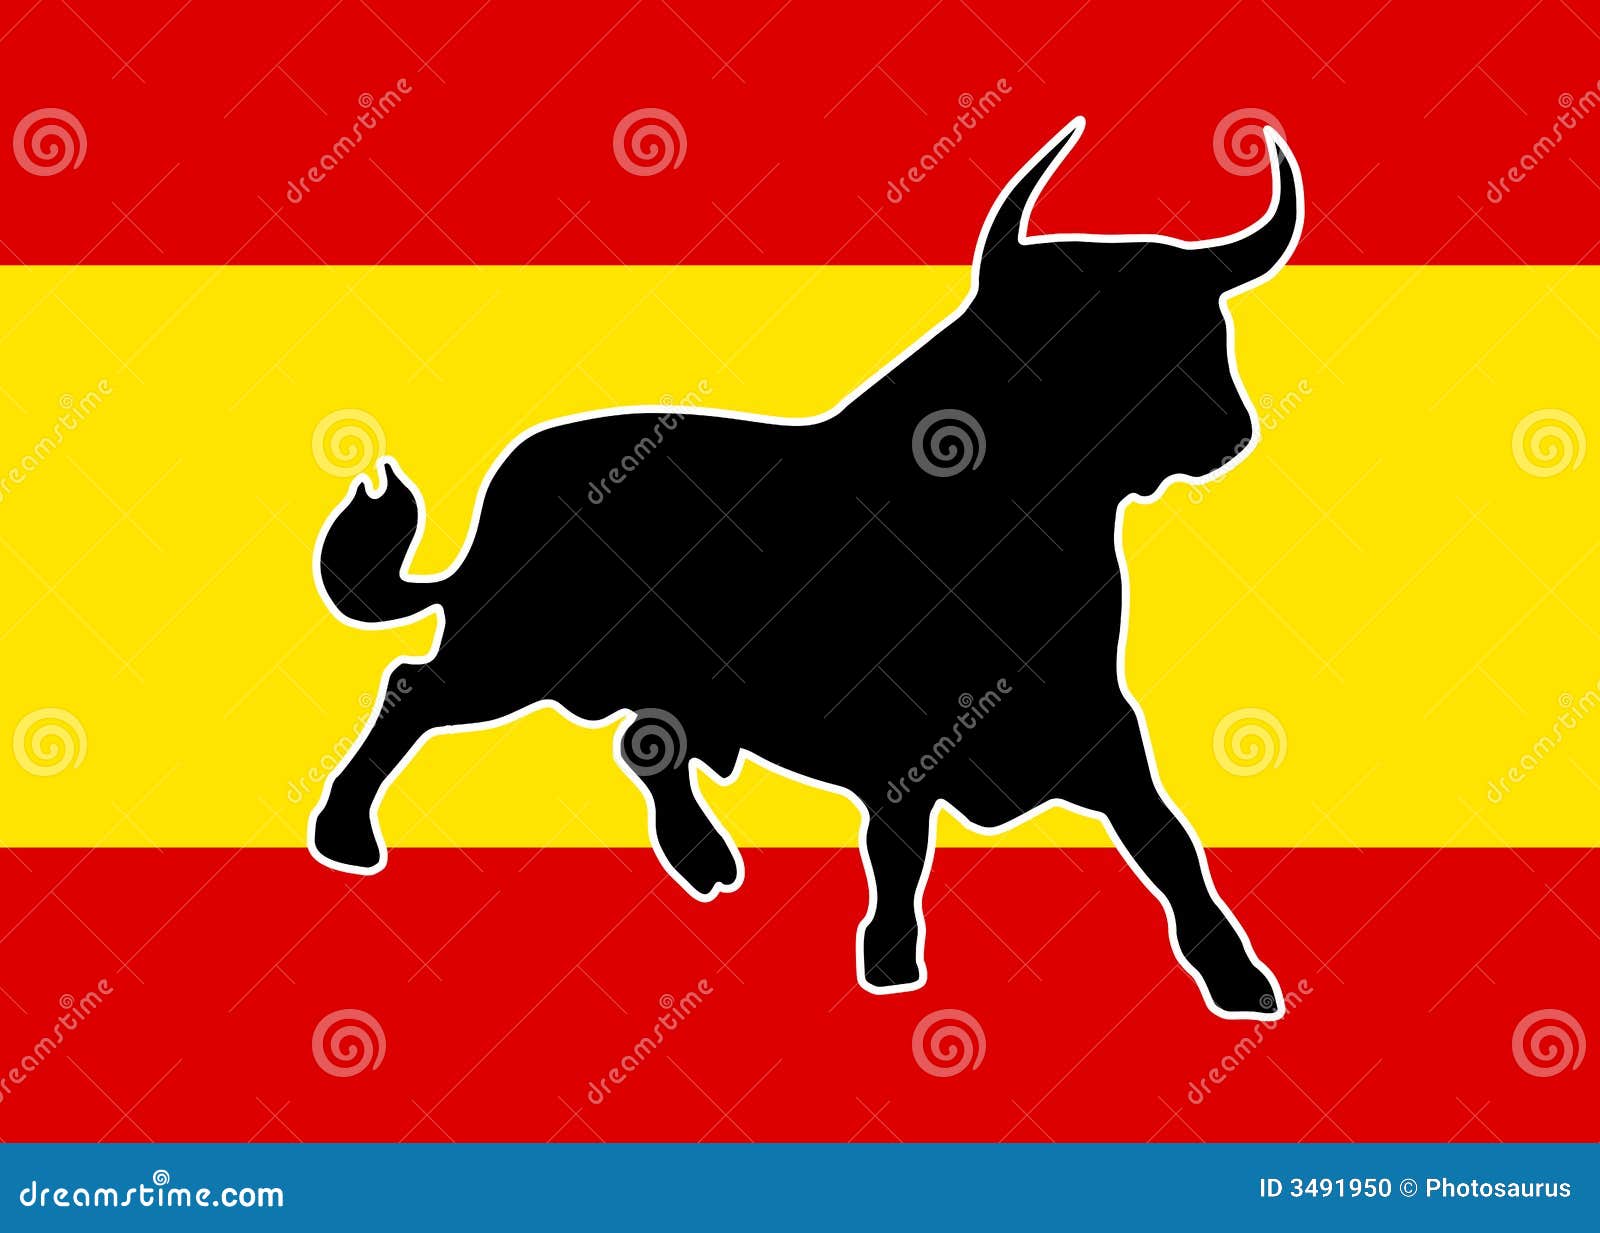 black bull with white border